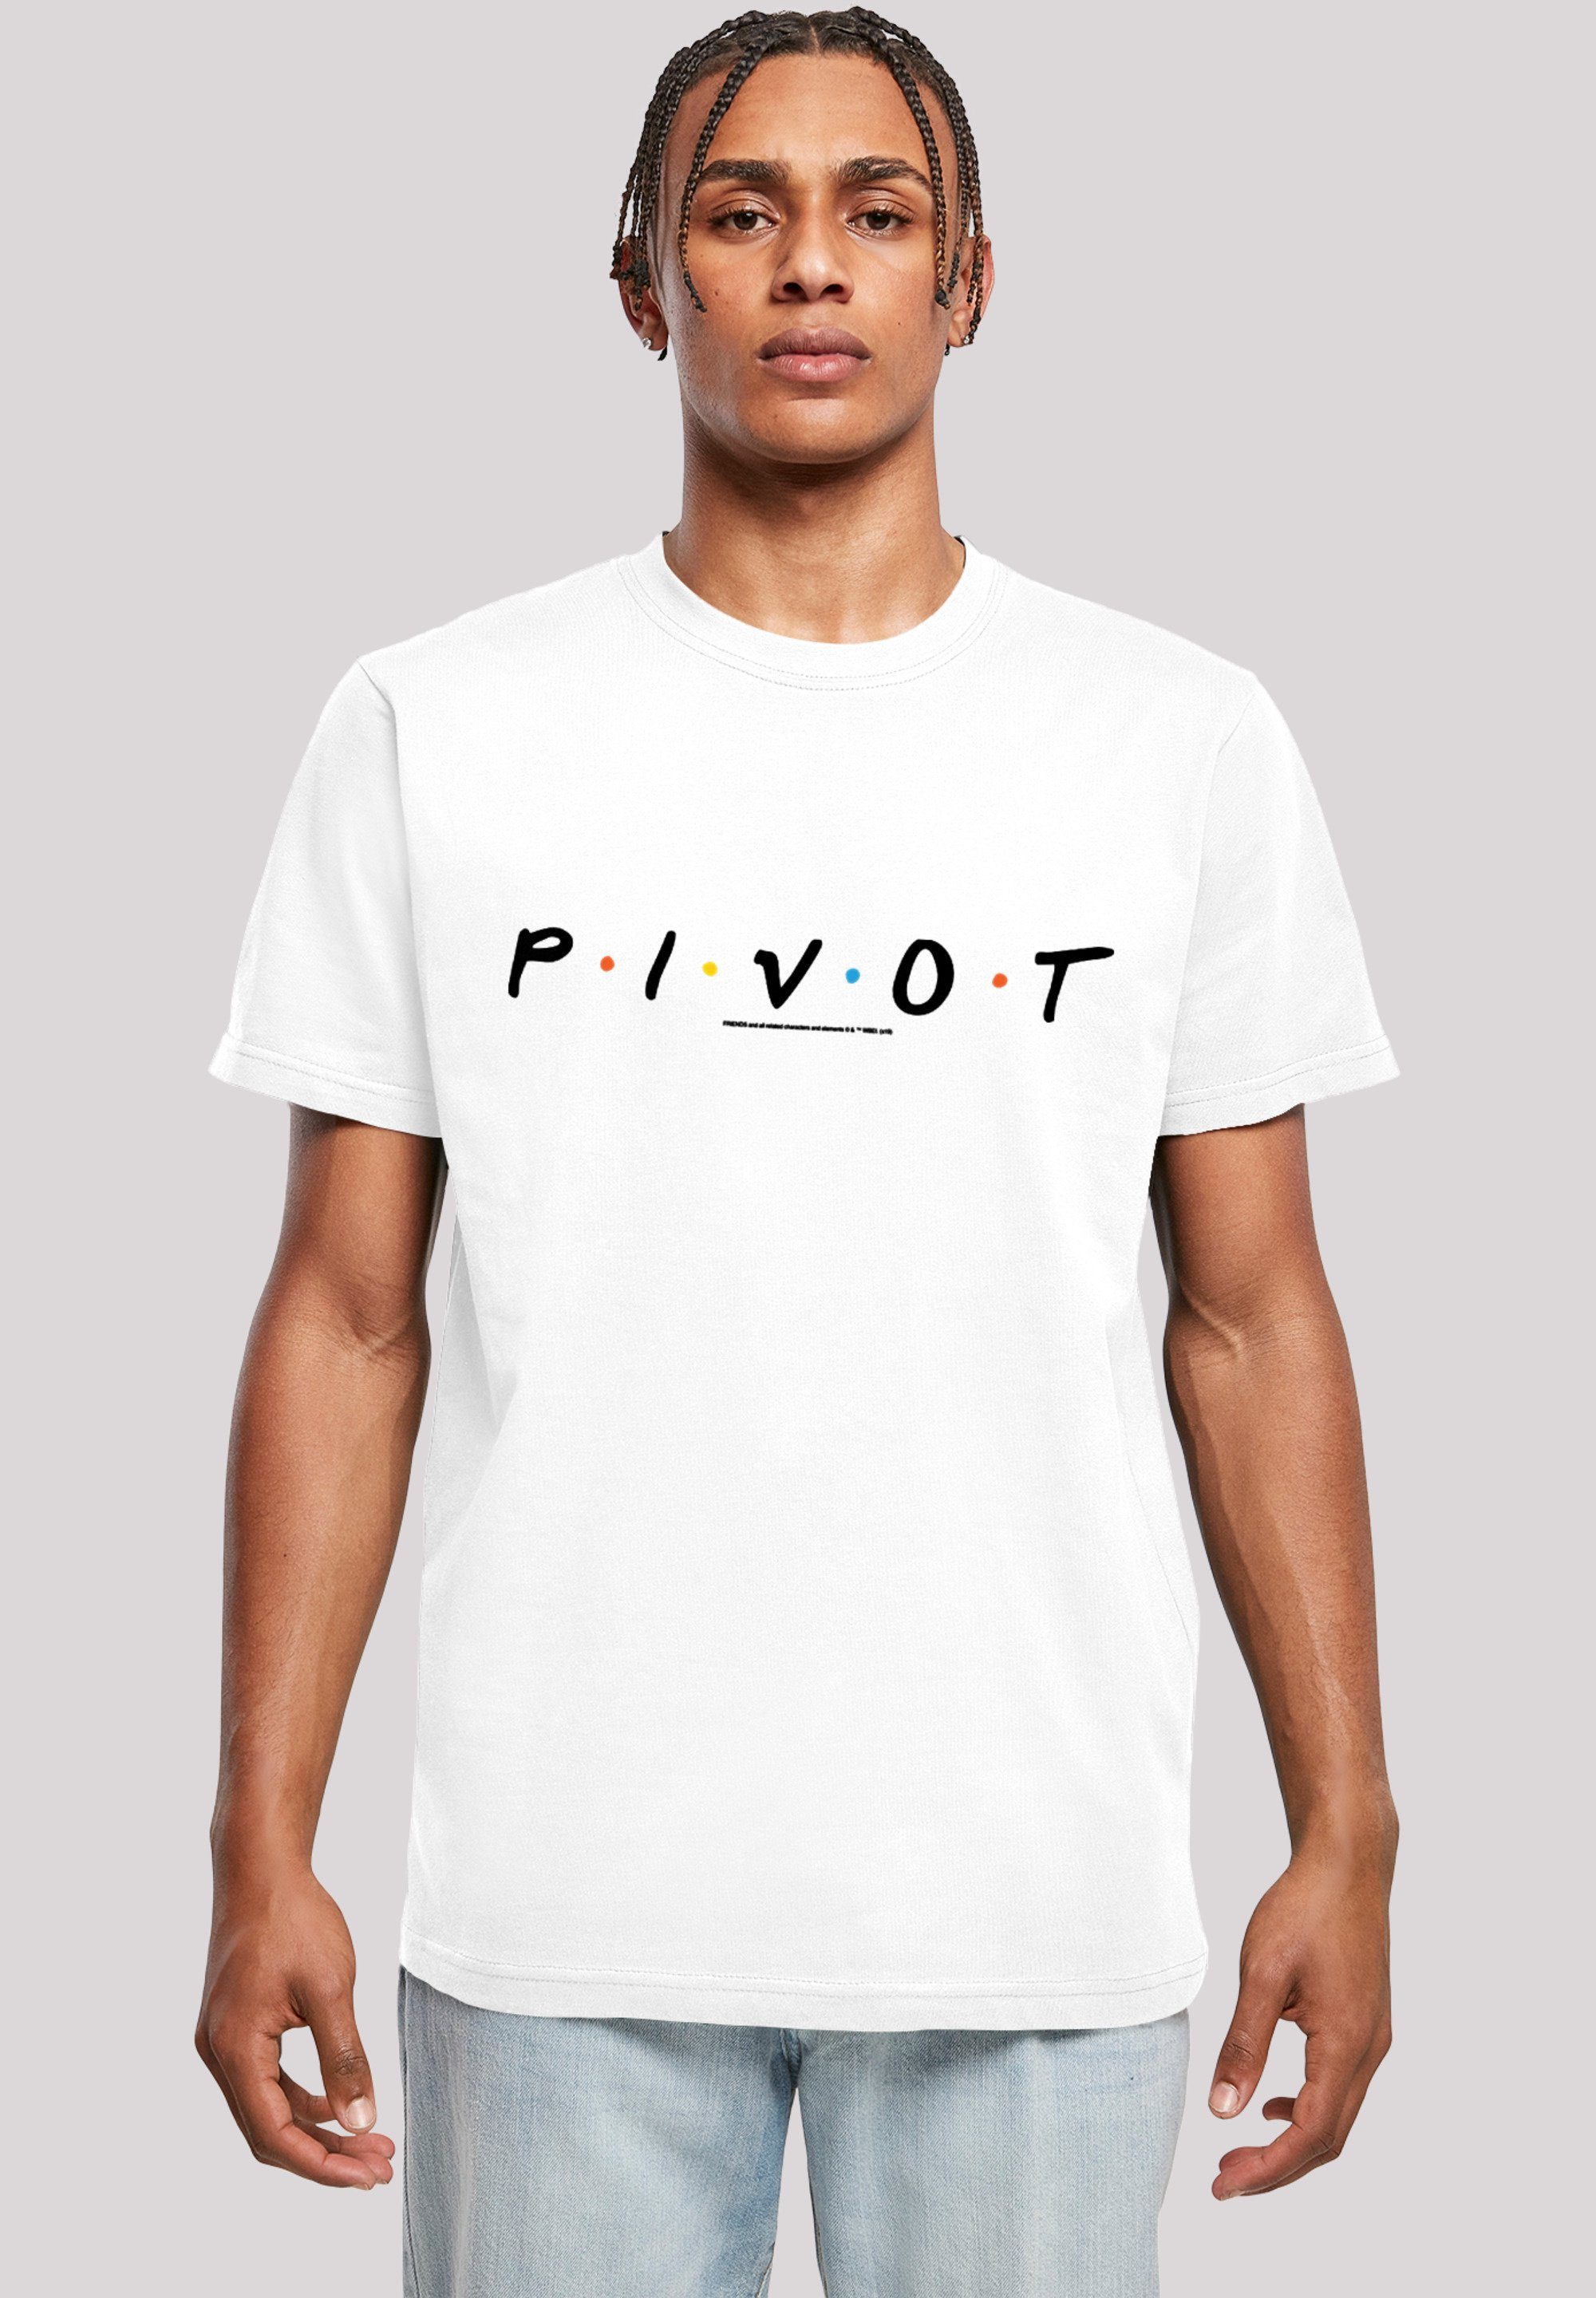 F4NT4STIC T-Shirt FRIENDS TV Serie Pivot Merch,Regular-Fit,Basic,Bedruckt Herren,Premium Logo